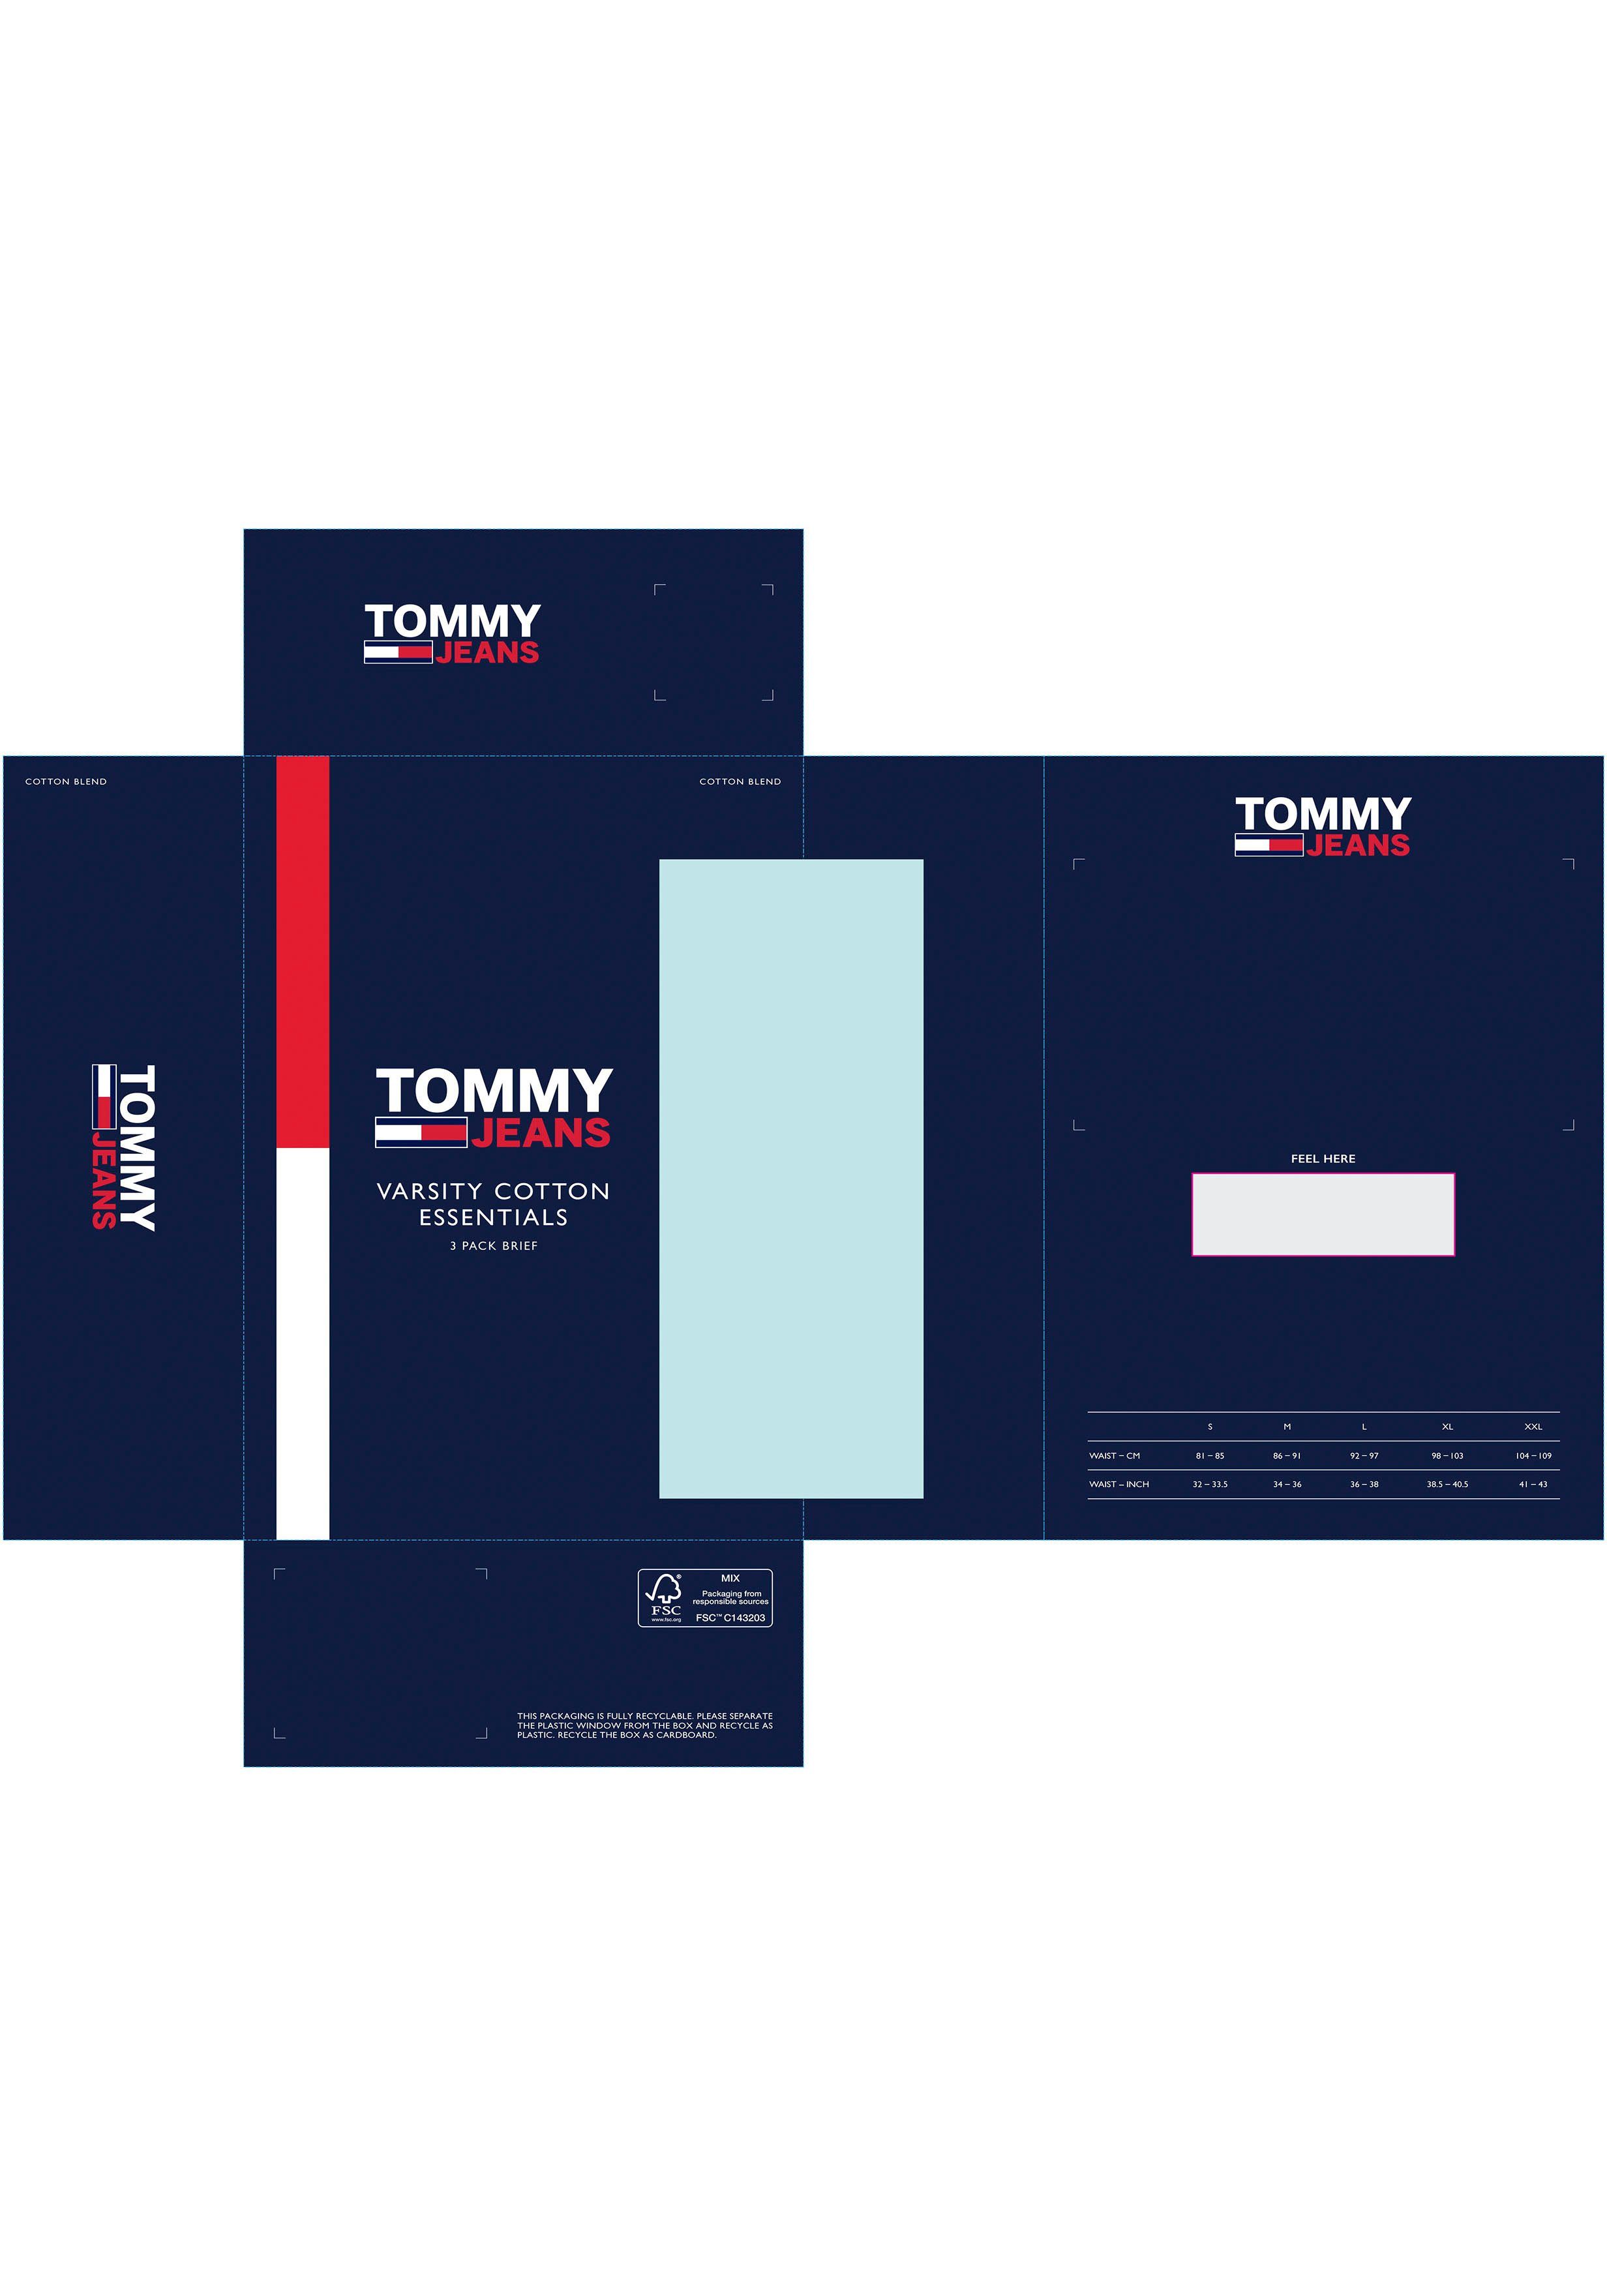 mit Hilfiger 3er-Pack) Tommy (Packung, Tommy Logo-Elastikbund Underwear 3-St., Deep-Crimson/White/Twilight-Navy Slips Jeans DTM 3P Jazz-Pants BRIEF